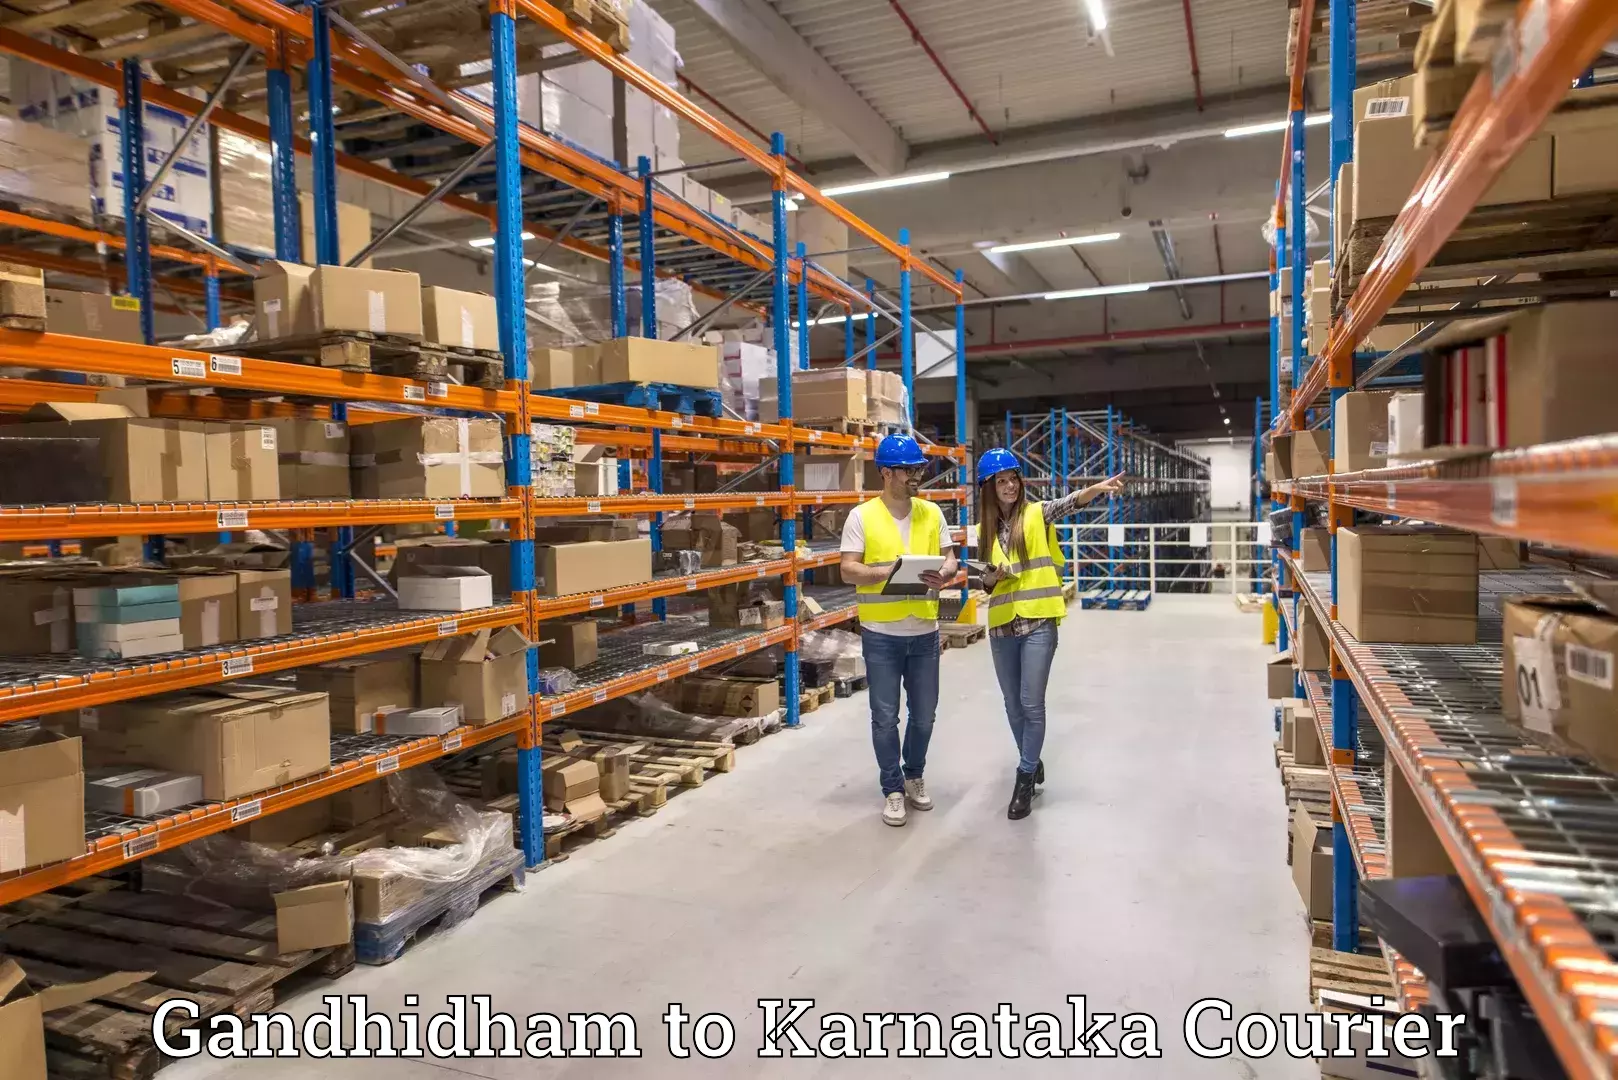 Flexible shipping options Gandhidham to Belgaum